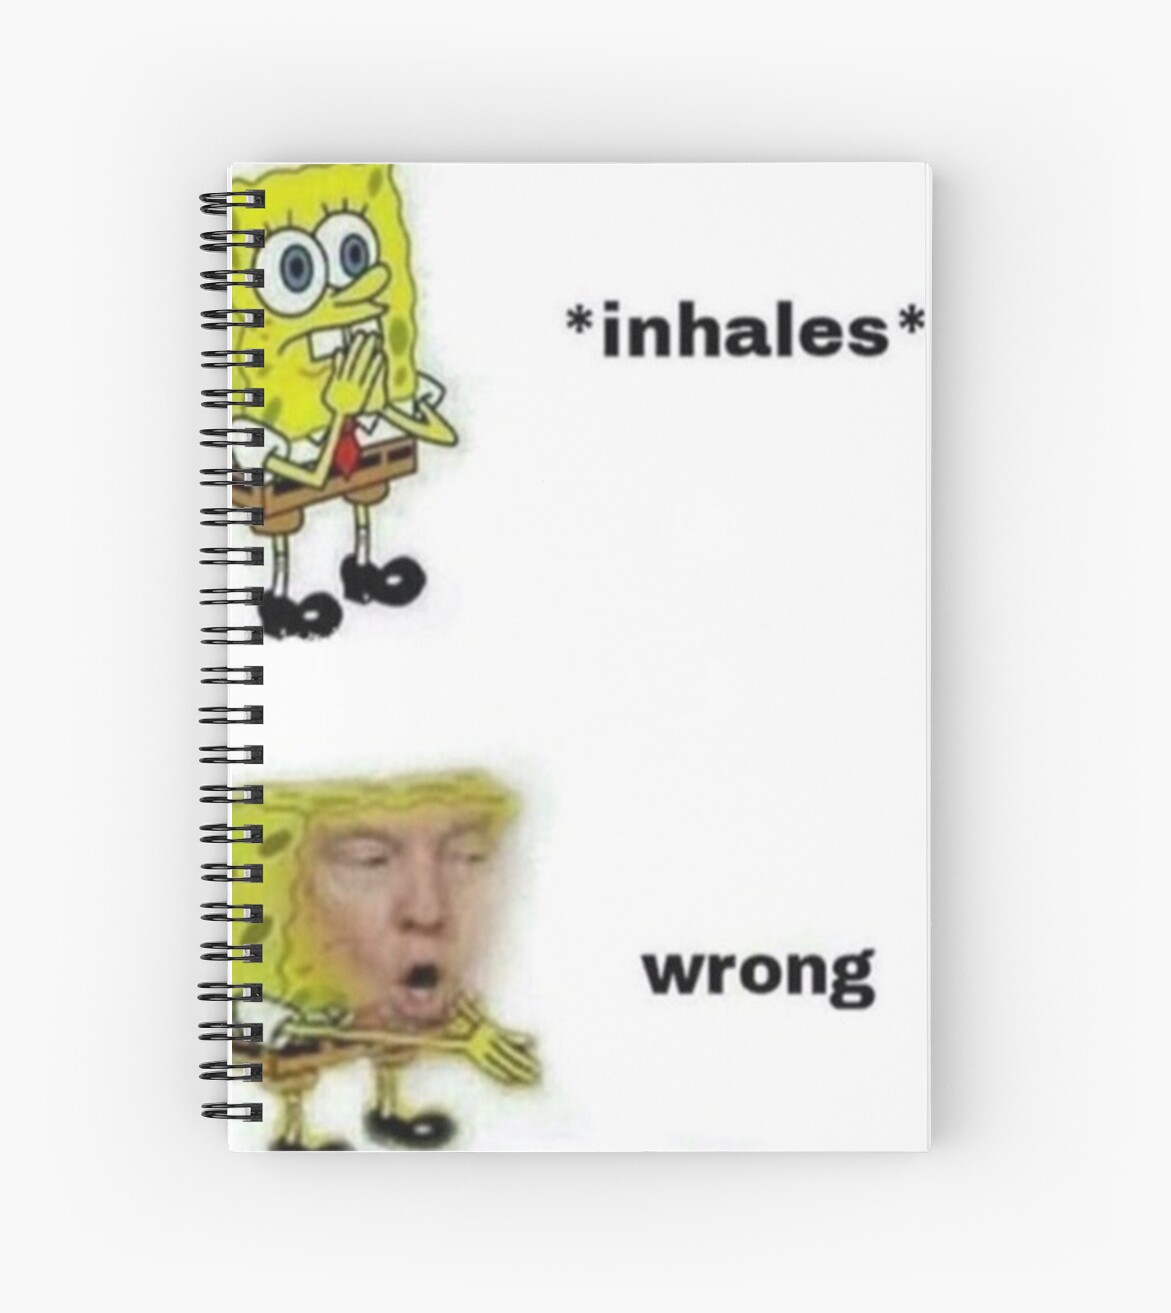 Wrong Donald Trump Spongebob Meme Spiral Notebooks By Fallonharrod